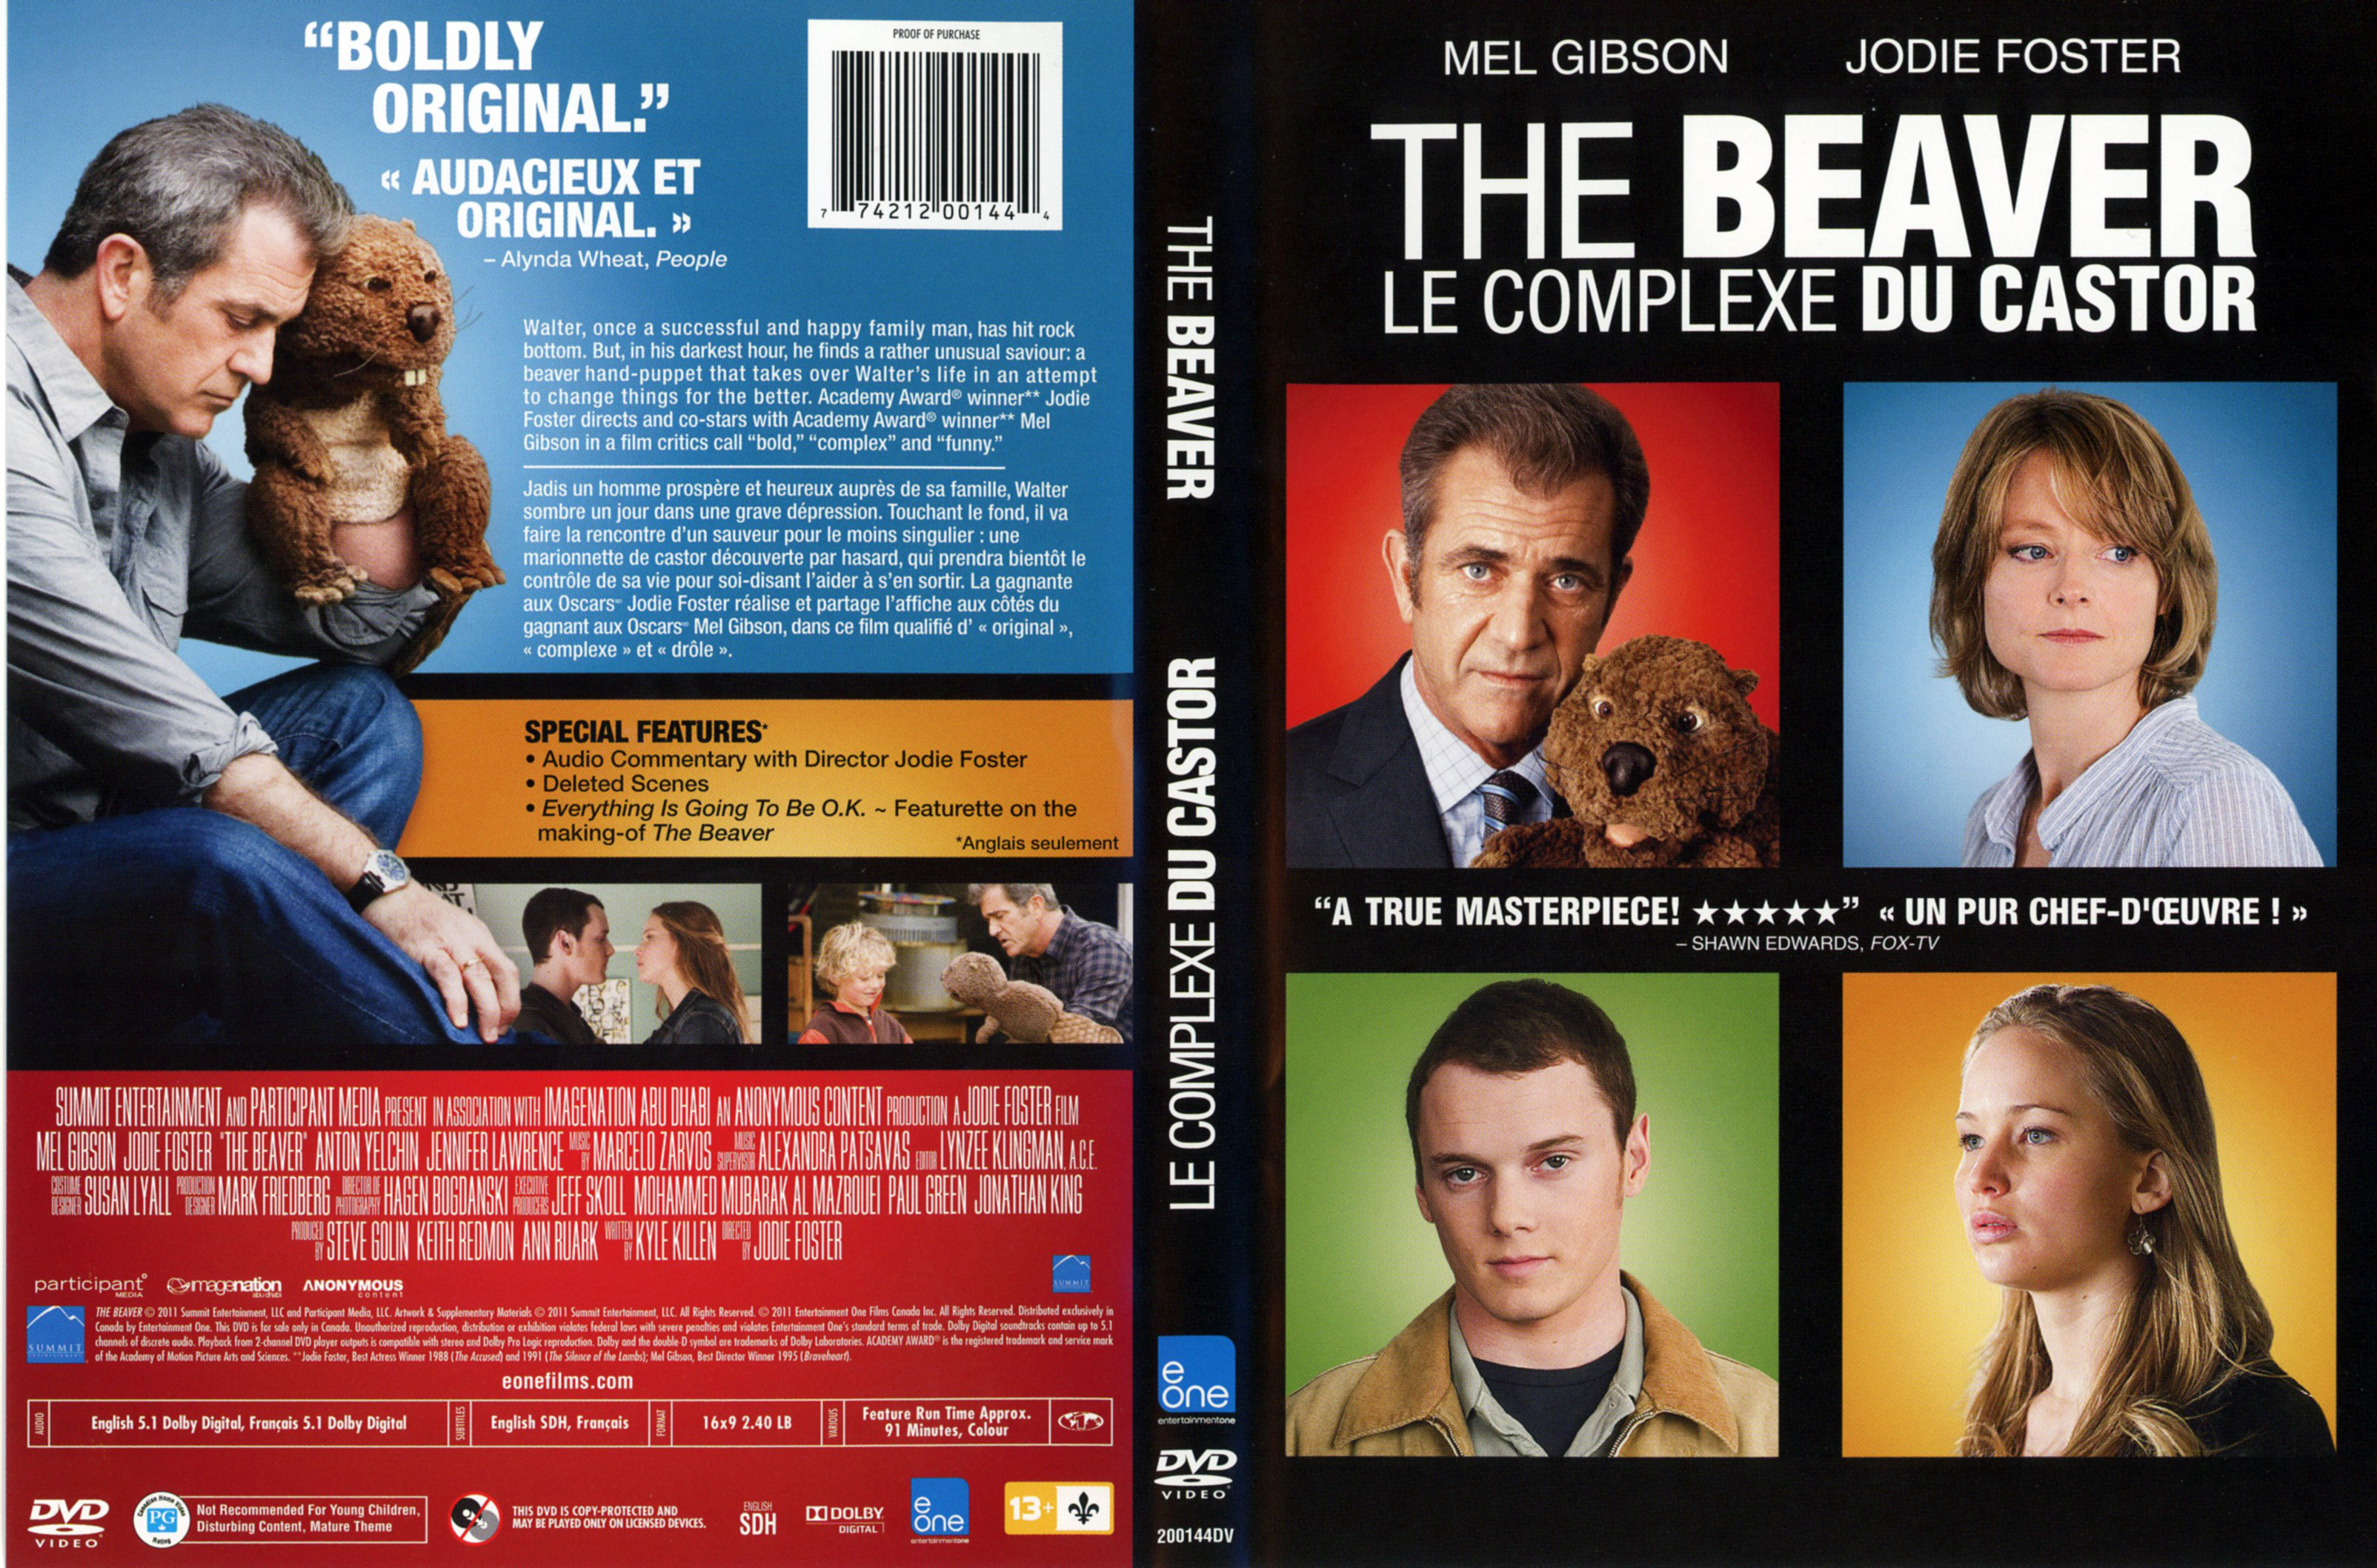 Jaquette DVD The Beaver - Le complexe du castor (Canadienne)